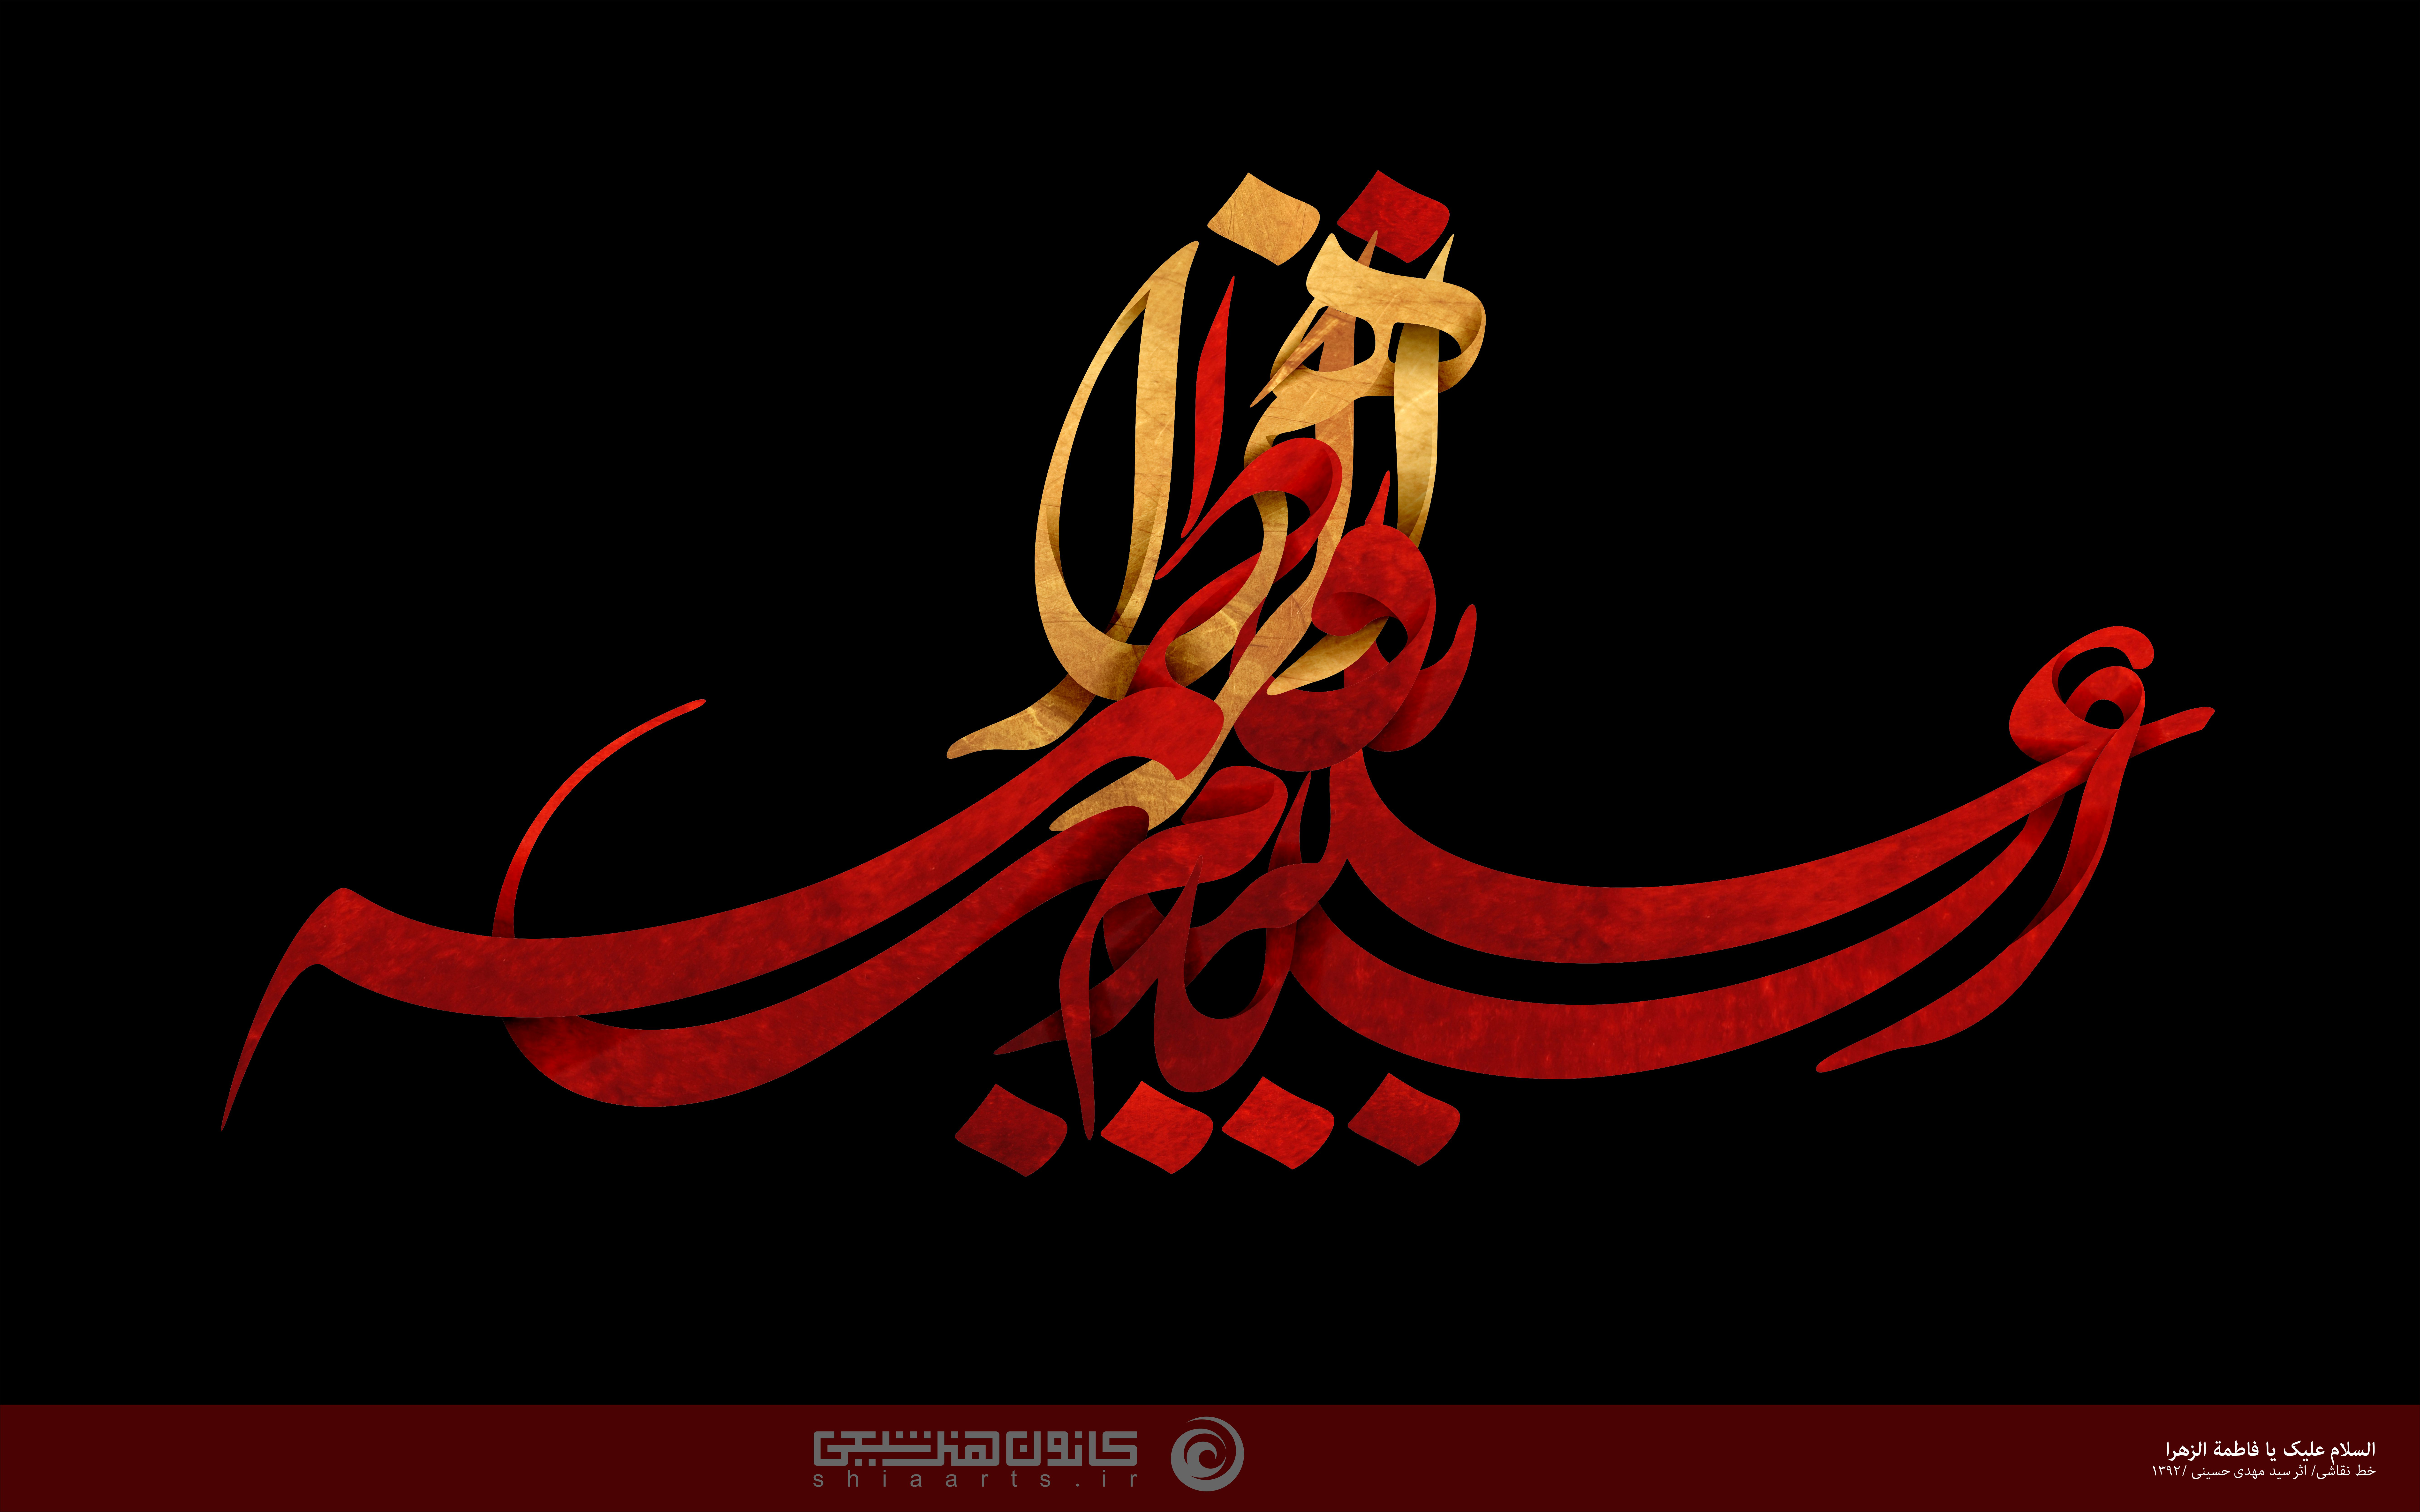 زهراء س تکنیک دیجیتال شاخه هنری خط نقاشی صاحب اثر سیدمهدی حسینی دوره